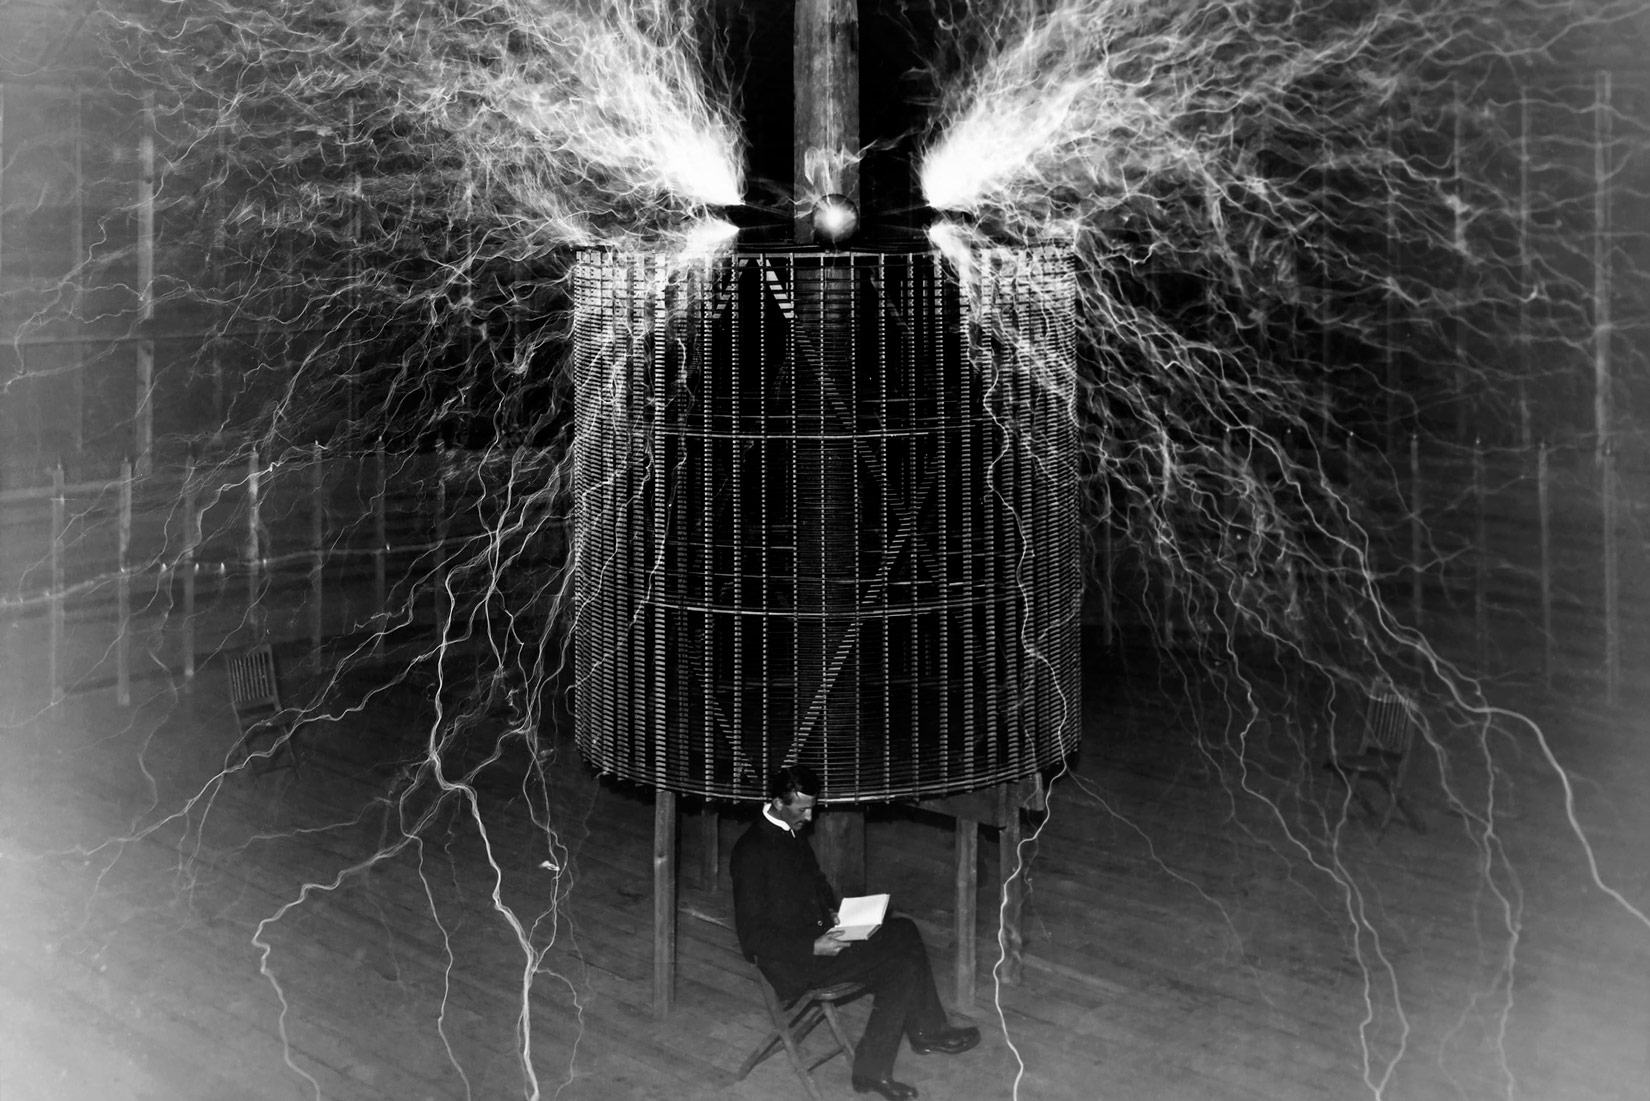 Fotografija prikazuje slavnog fizičara Nikolu Tesla. Fizičar, odjeven u crno odijelo sjedi ispred kaveza s elektromotorom, u rukama drži knjigu. Iznad elektromotora sijevaju bijele iskre različitih duljina, pojedine sežu do tla.